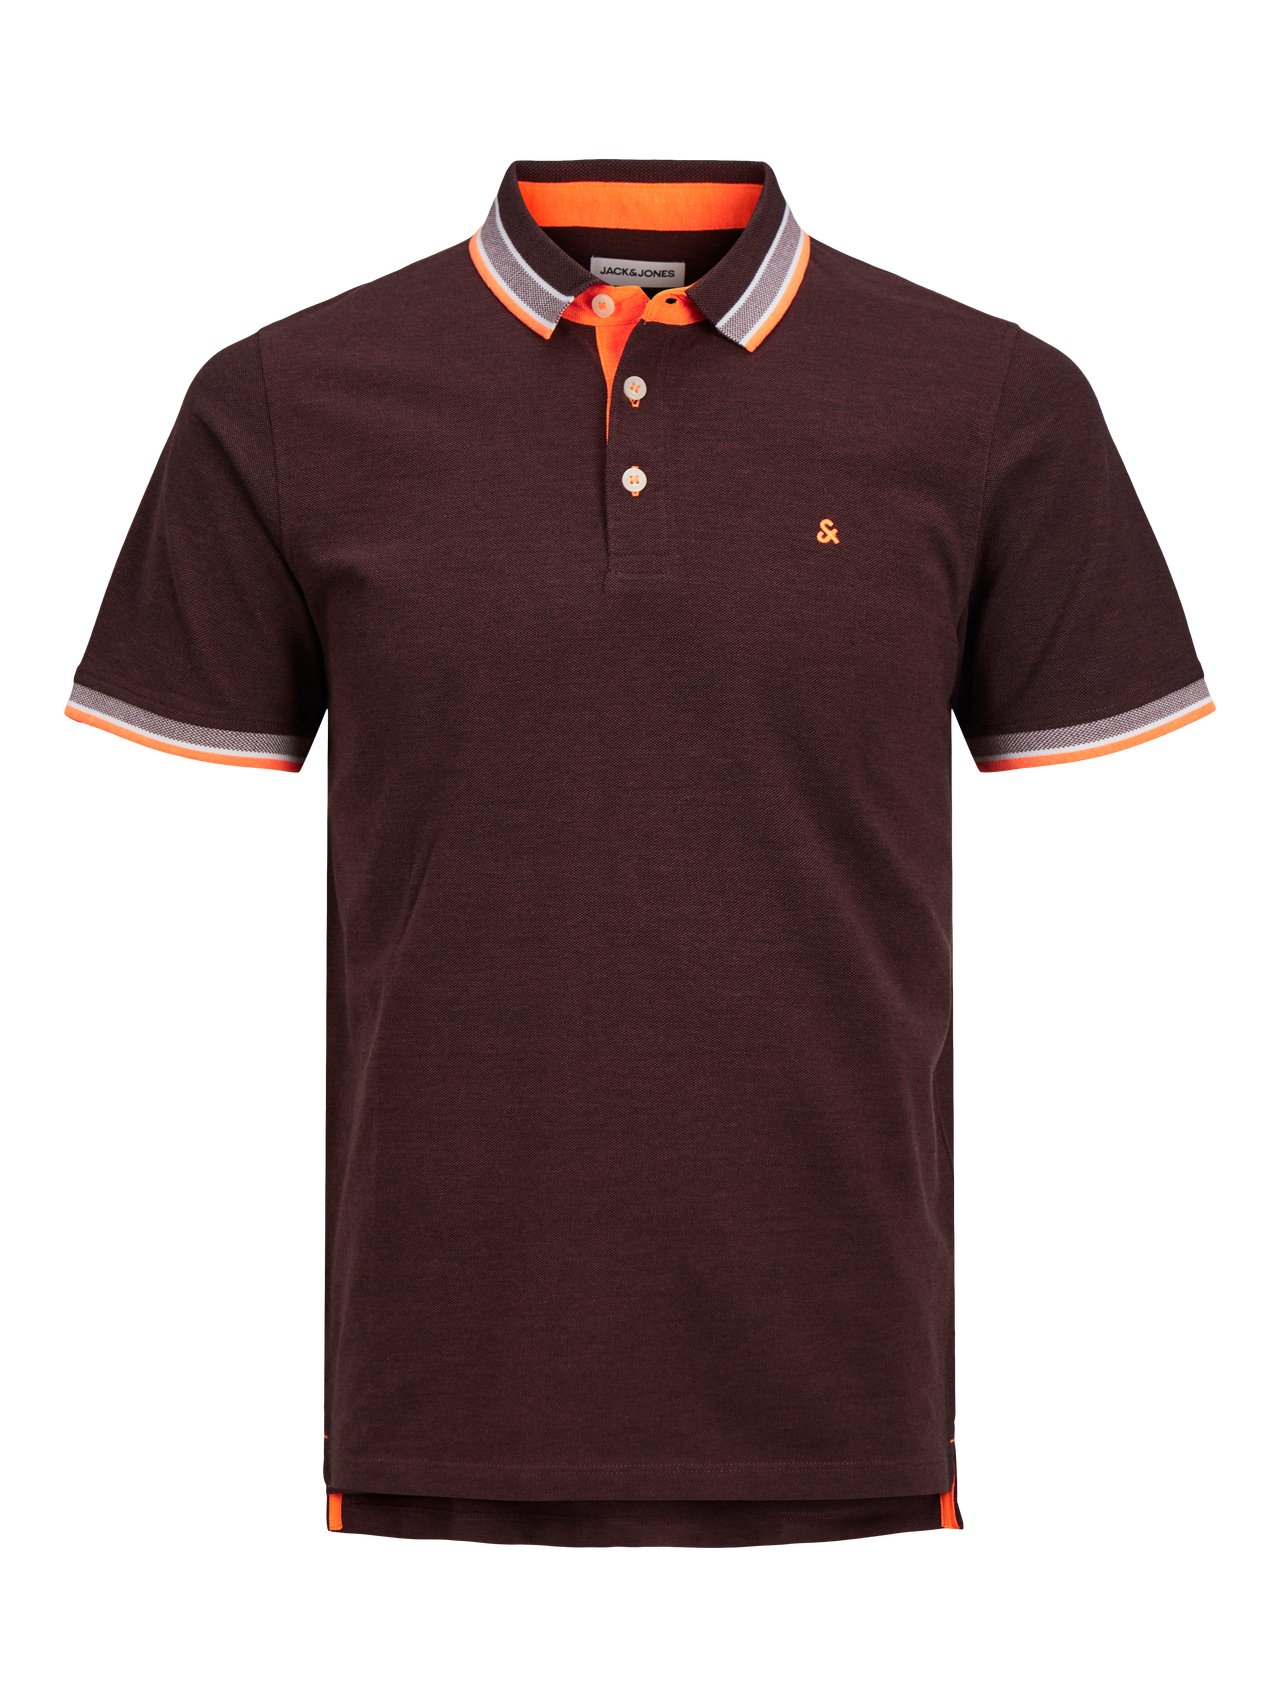 Jack & Jones Enfärgat Polo T-shirt -Vineyard Wine  - 12136668